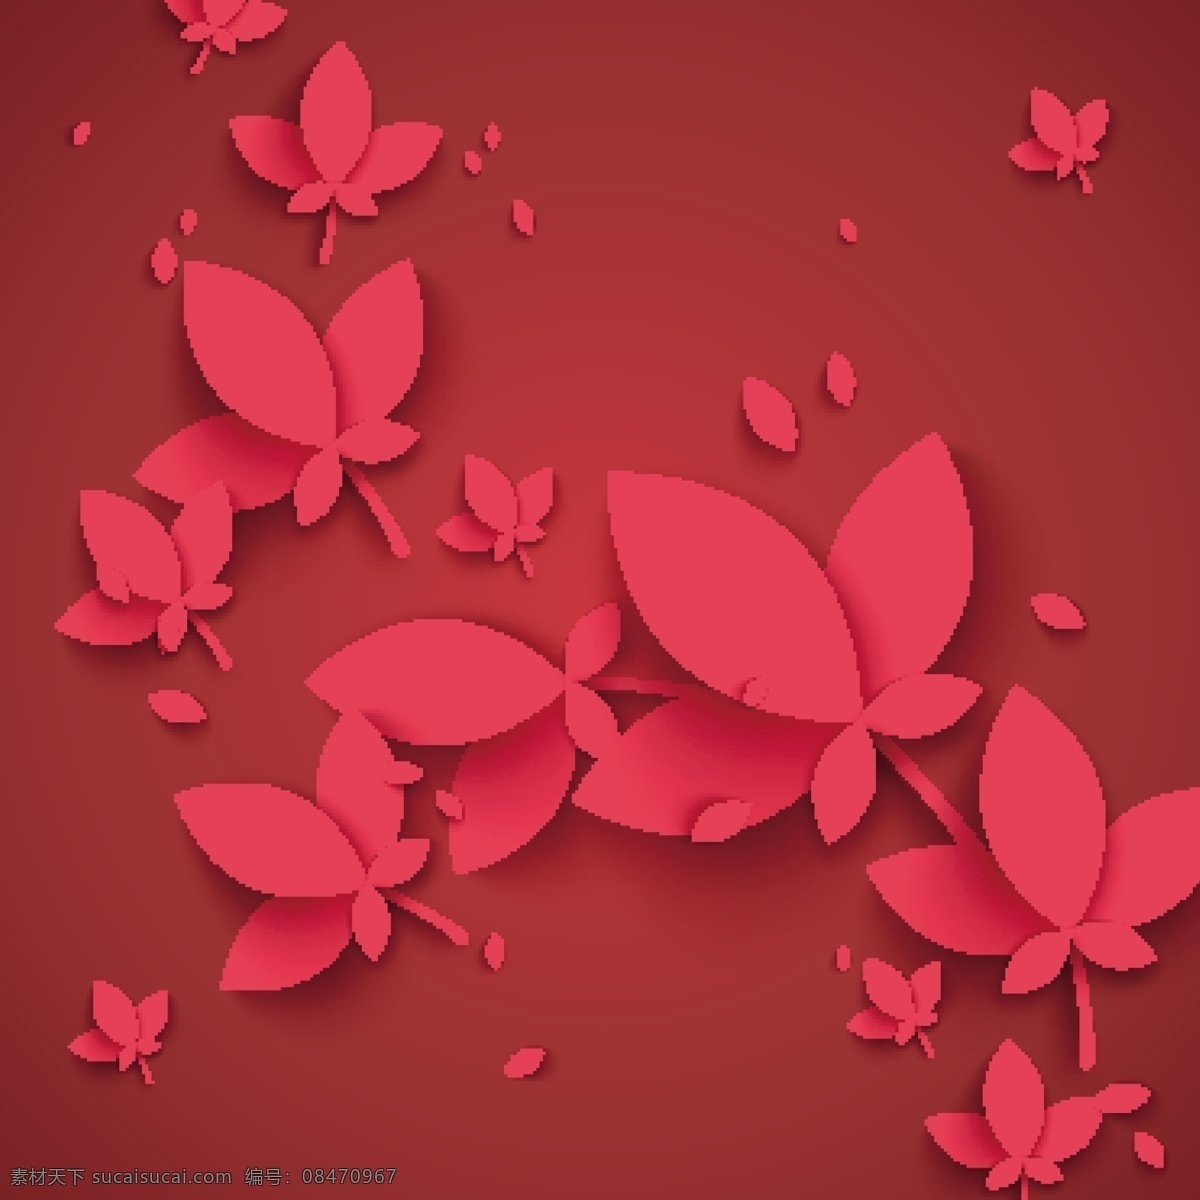 红色 花瓣 图标 传统节日 中秋节 活动 模板下载 中国传统节日 荷花 中国节 传统节 中国风